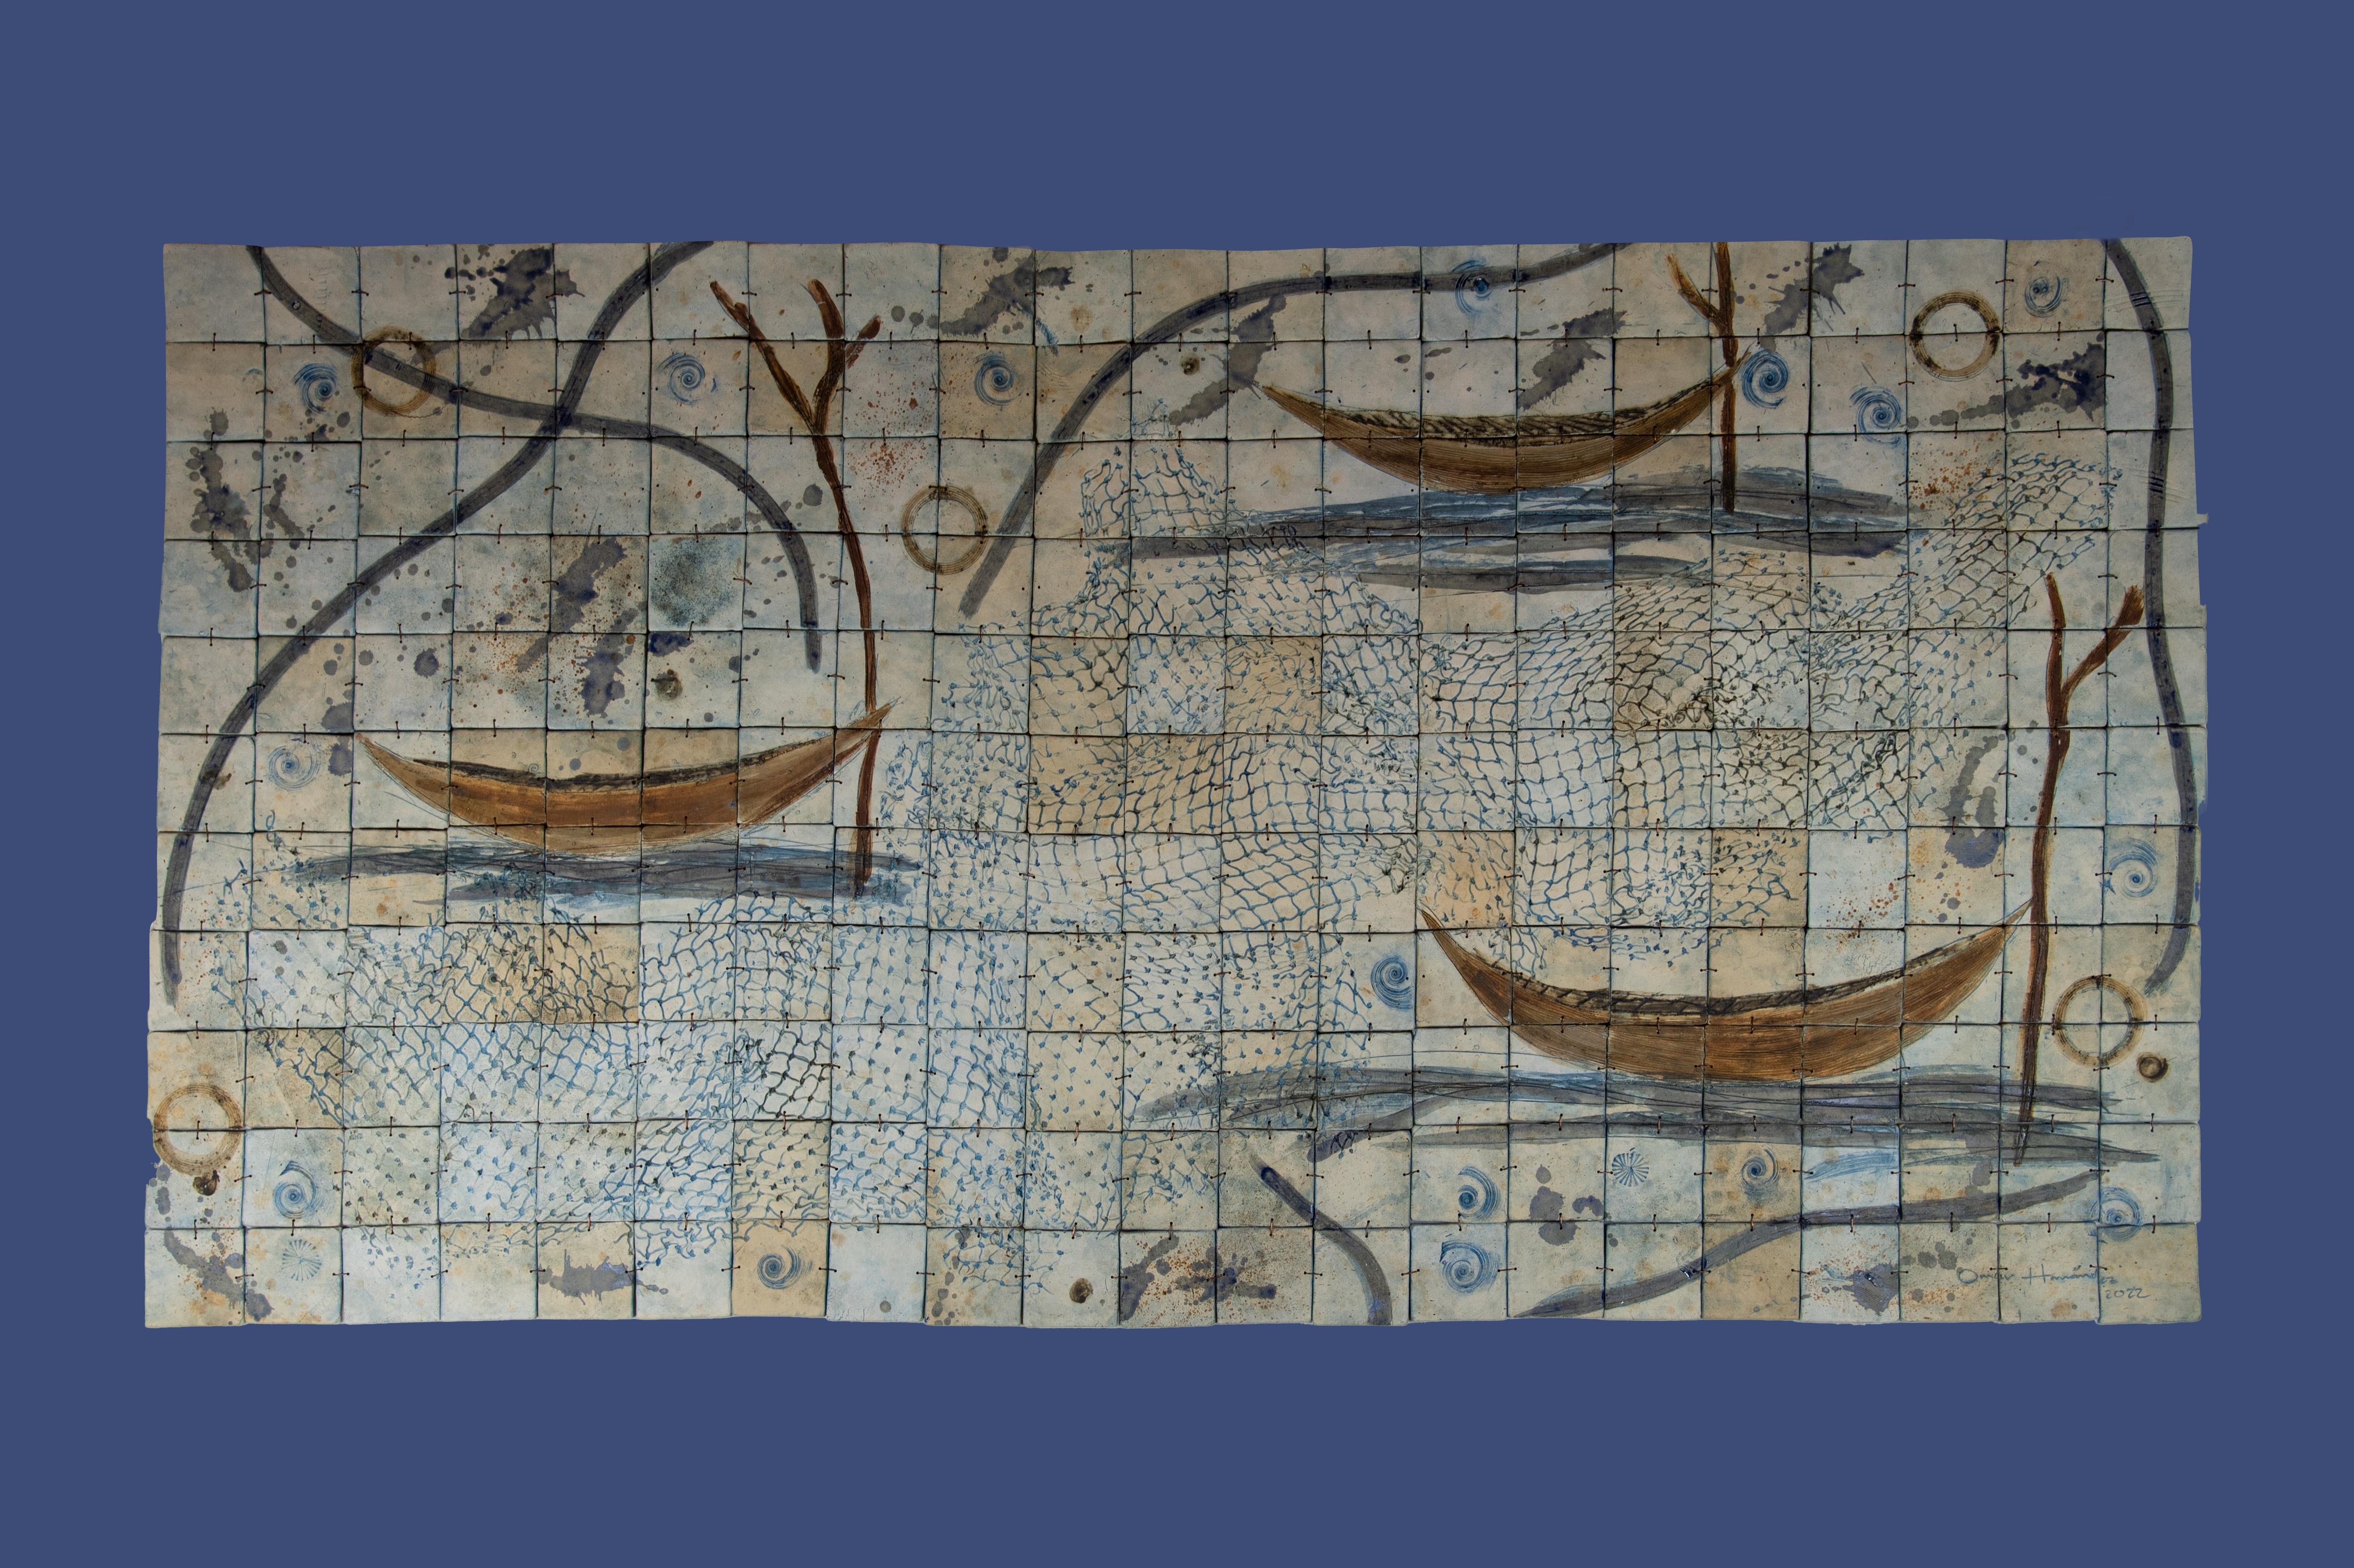 Diese organische Wanddekoration besteht aus Abdrücken von Fischerbooten, die zu einem großen Wandbild zusammengefügt sind. Der rustikale Stil wird durch die Verwendung von Pigmenten wie Emaille und Lehm erzielt. Perfekt, um große Wände und offene